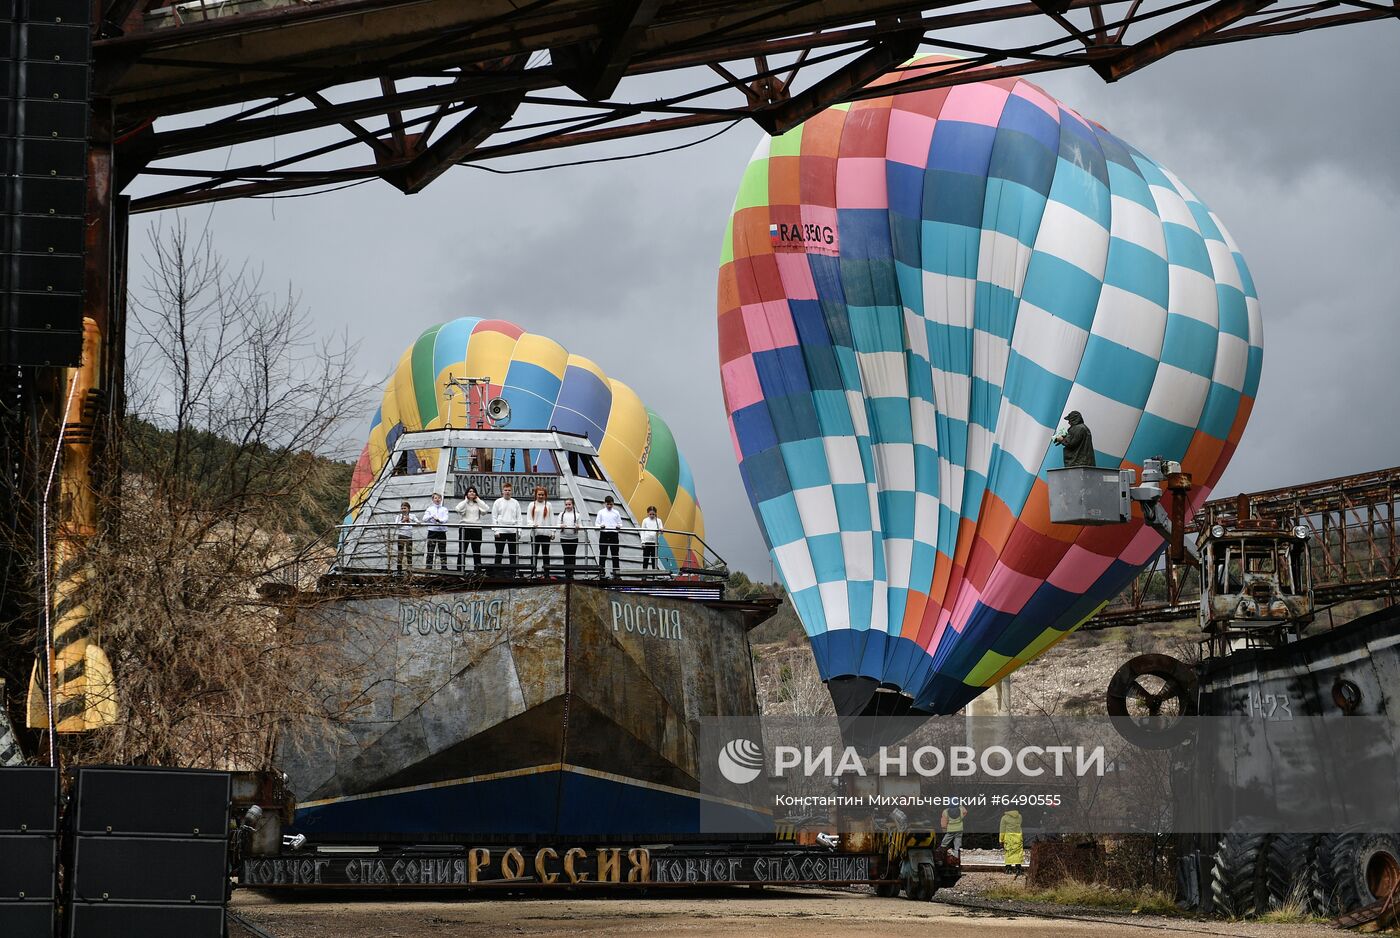 Празднование 7-й годовщины воссоединения Крыма с Россией